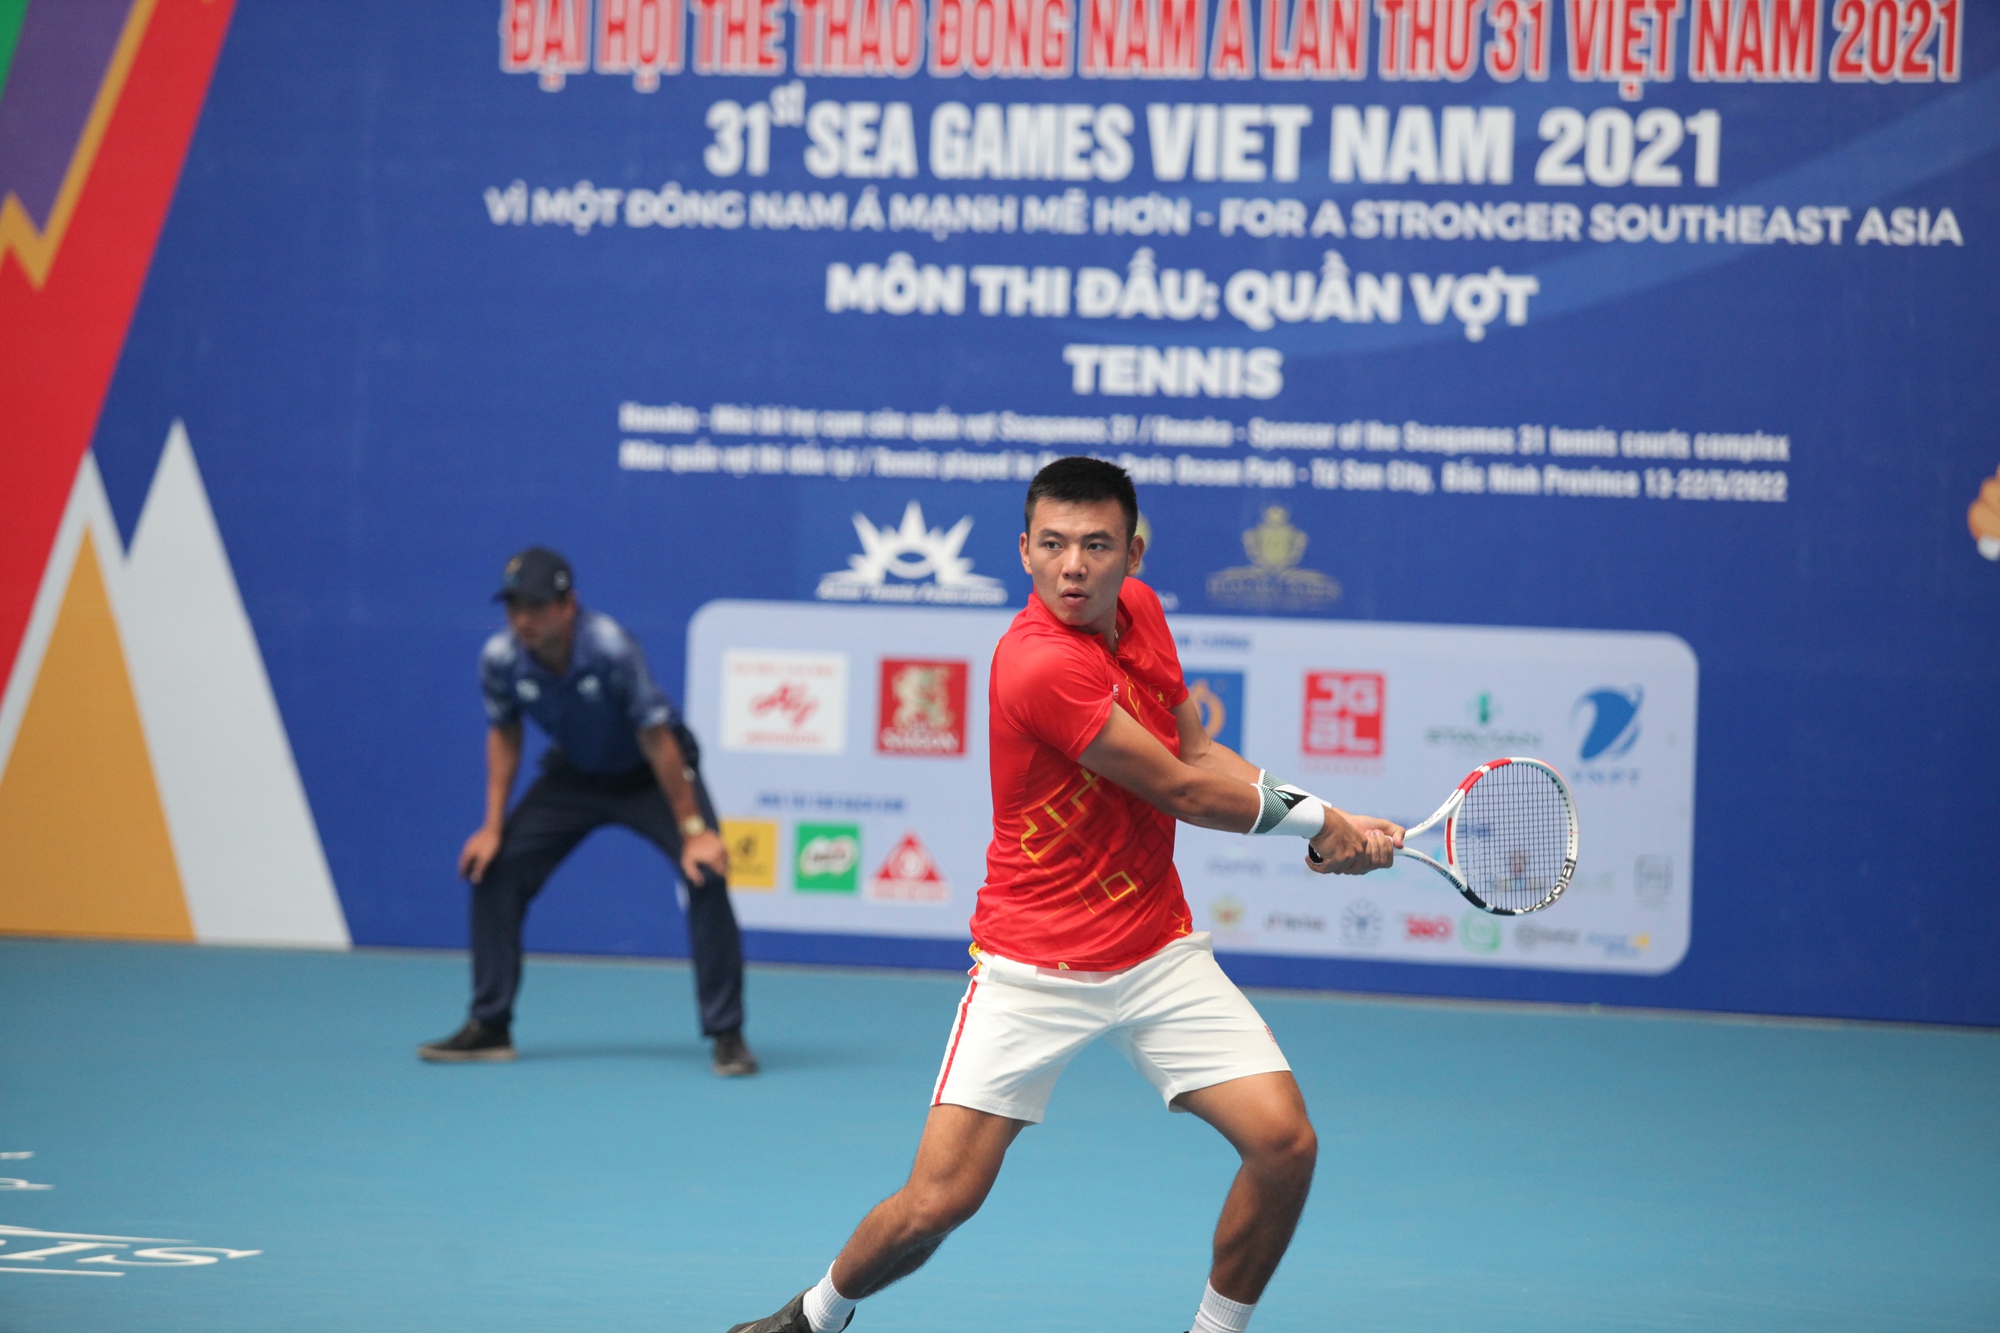 Lý Hoàng Nam, Trịnh Linh Giang giúp uần vợt Việt Nam có ngày thi đấu thành công - Ảnh 1.